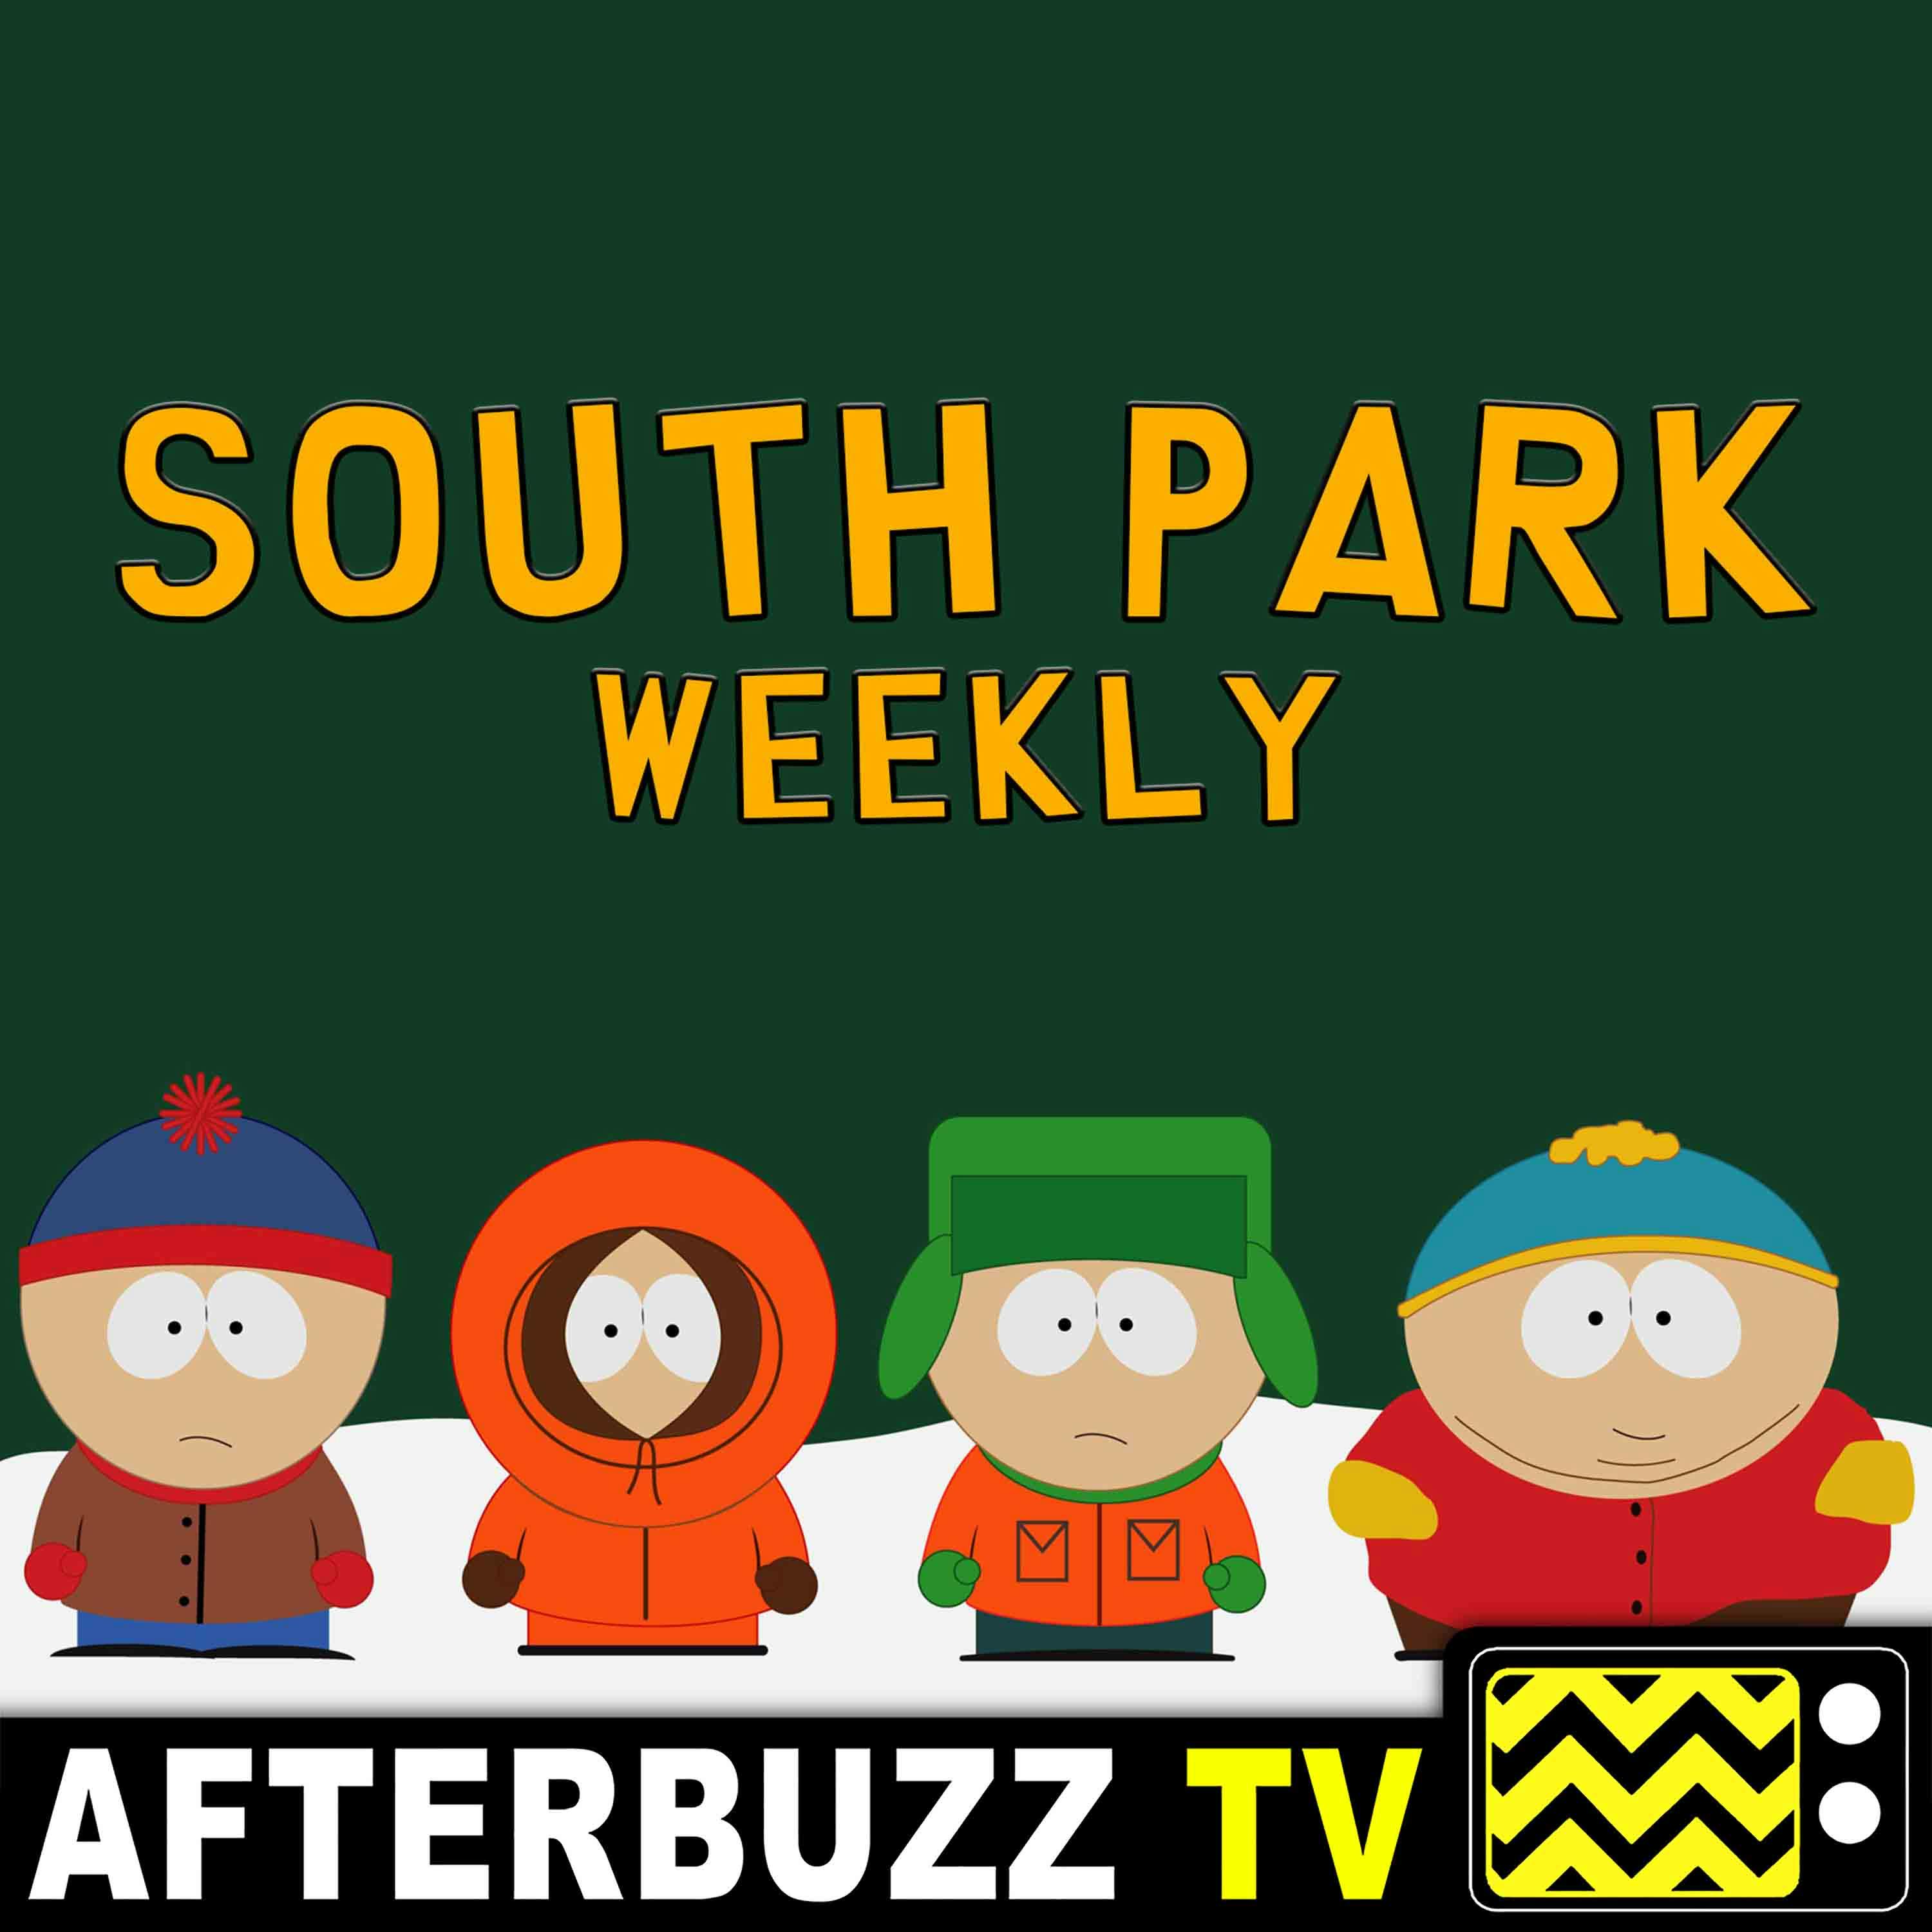 Best Christmas Episode Debate | South Park Weekly